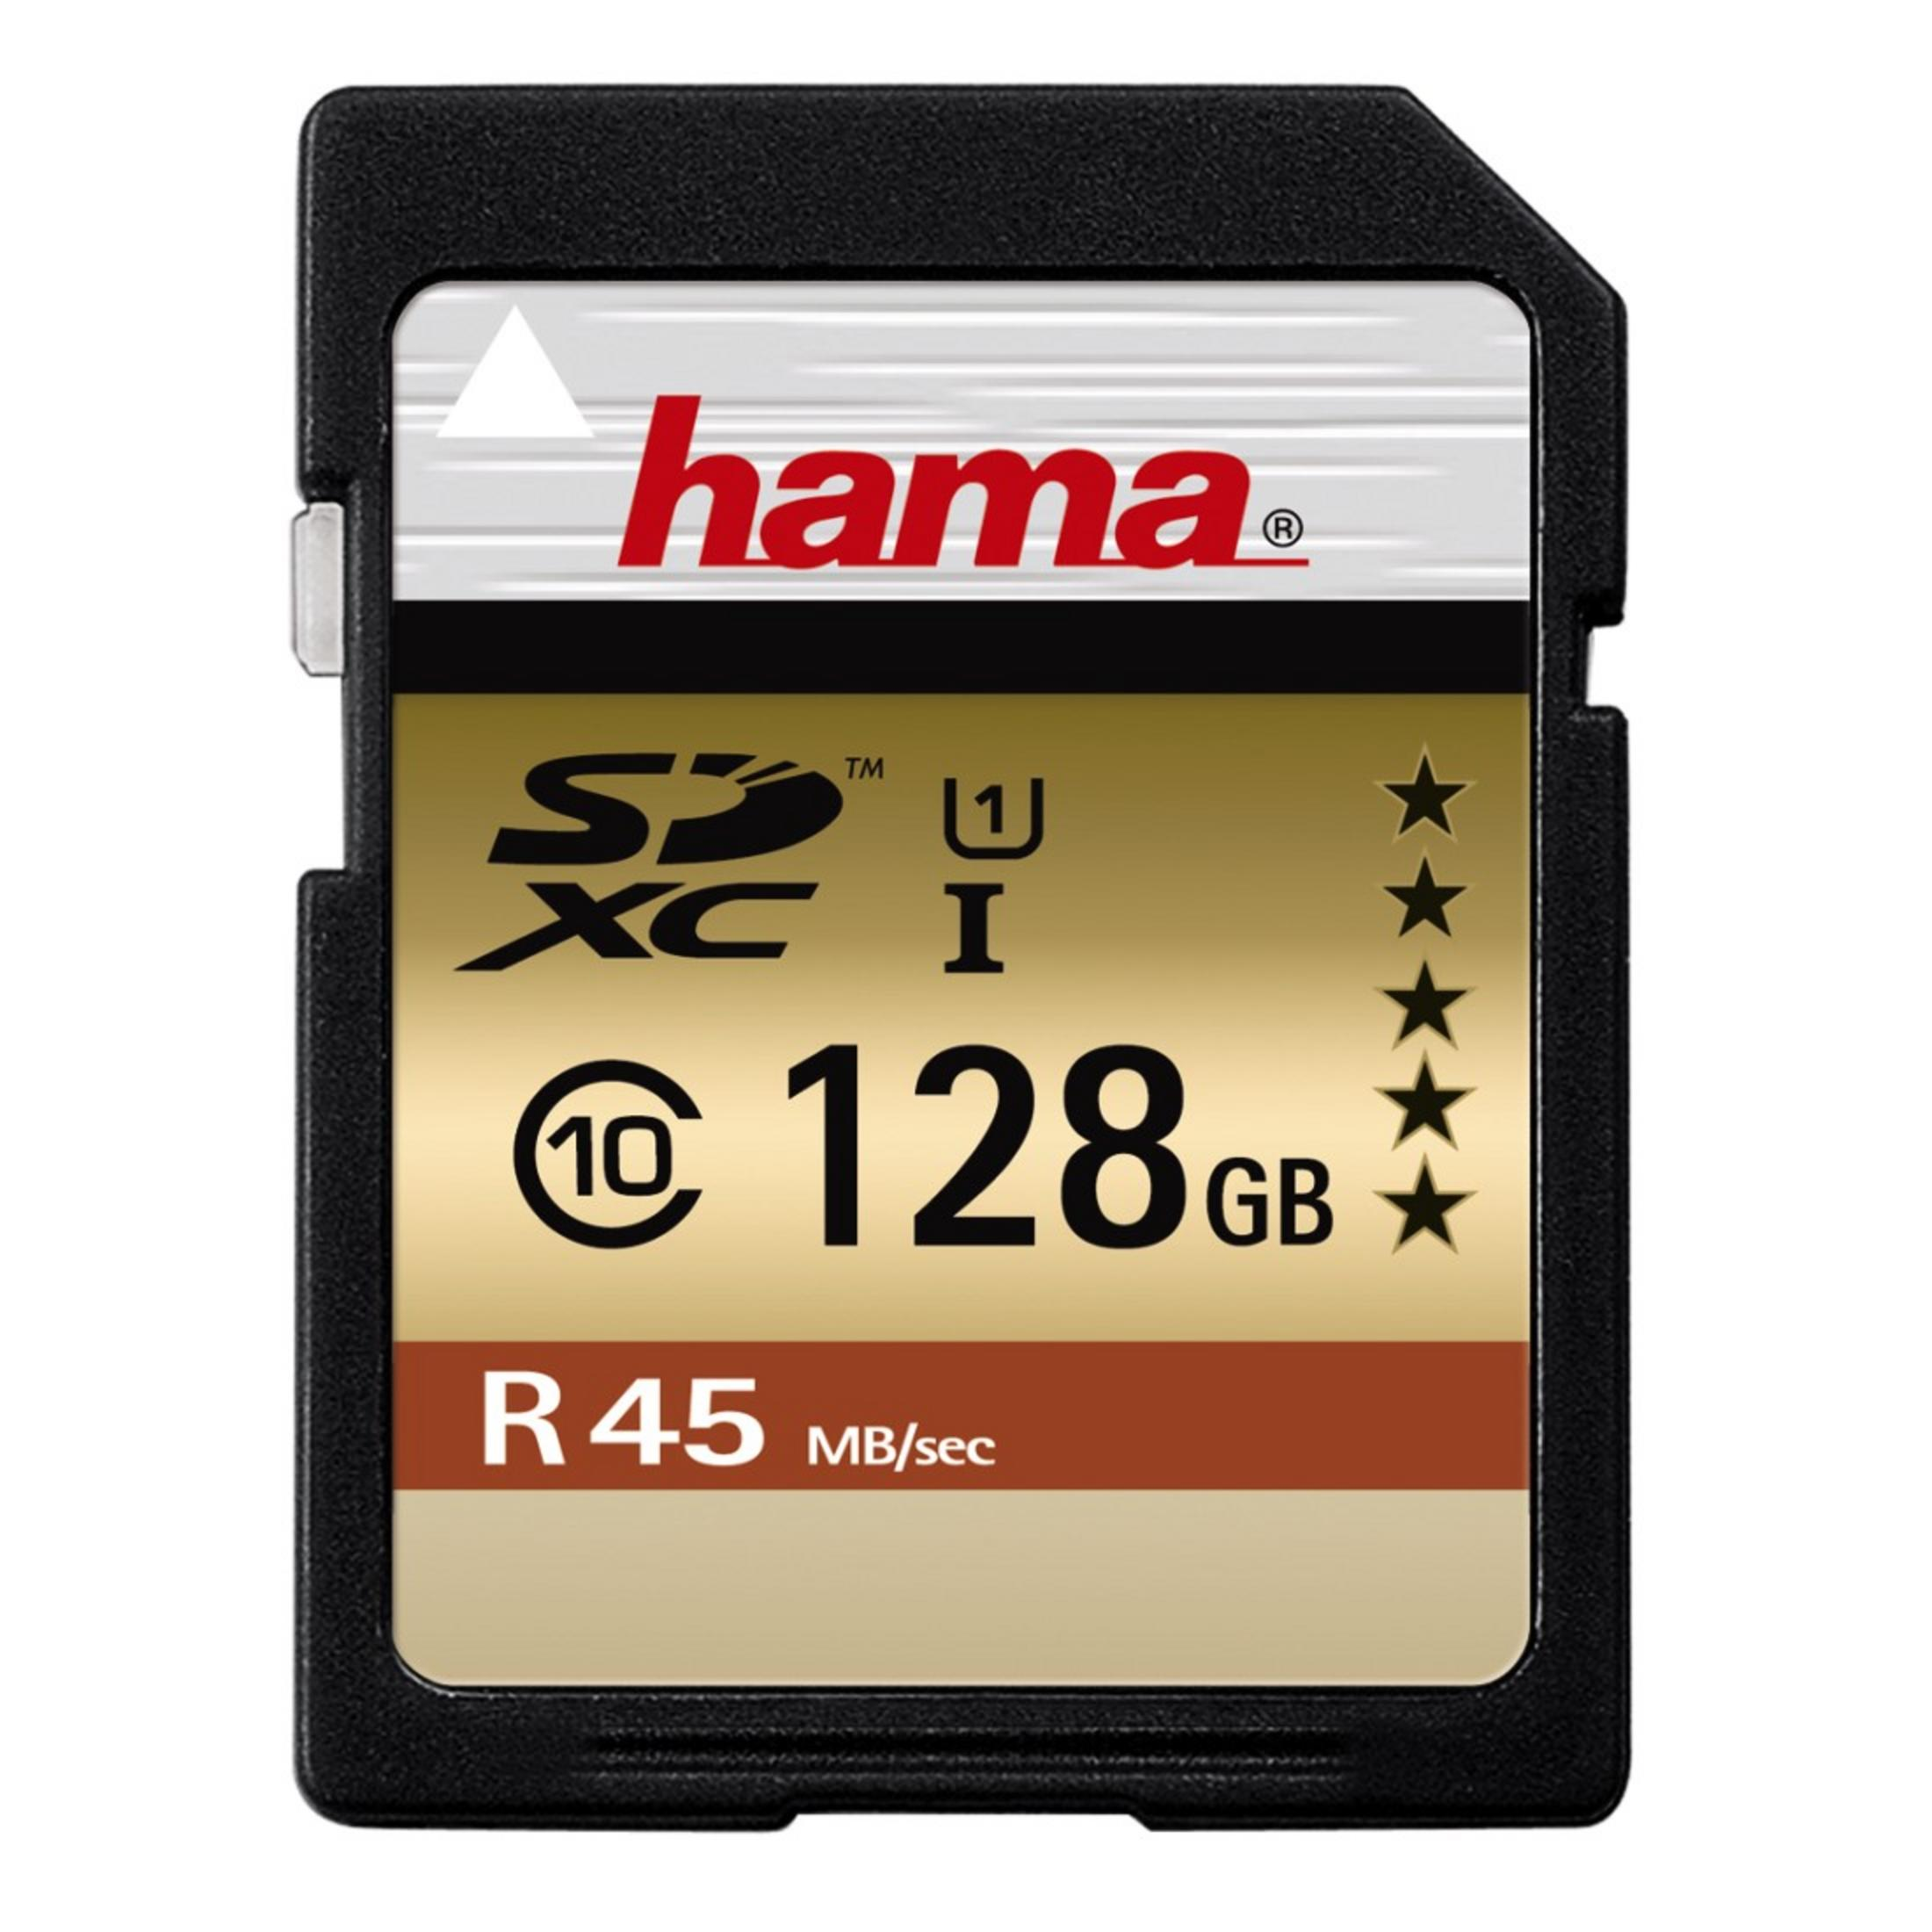 SDXC 128 114945 UI V10 128GB C10 GB, 45MB/S, 45 MB/s Speicherkarte, HAMA SDXC